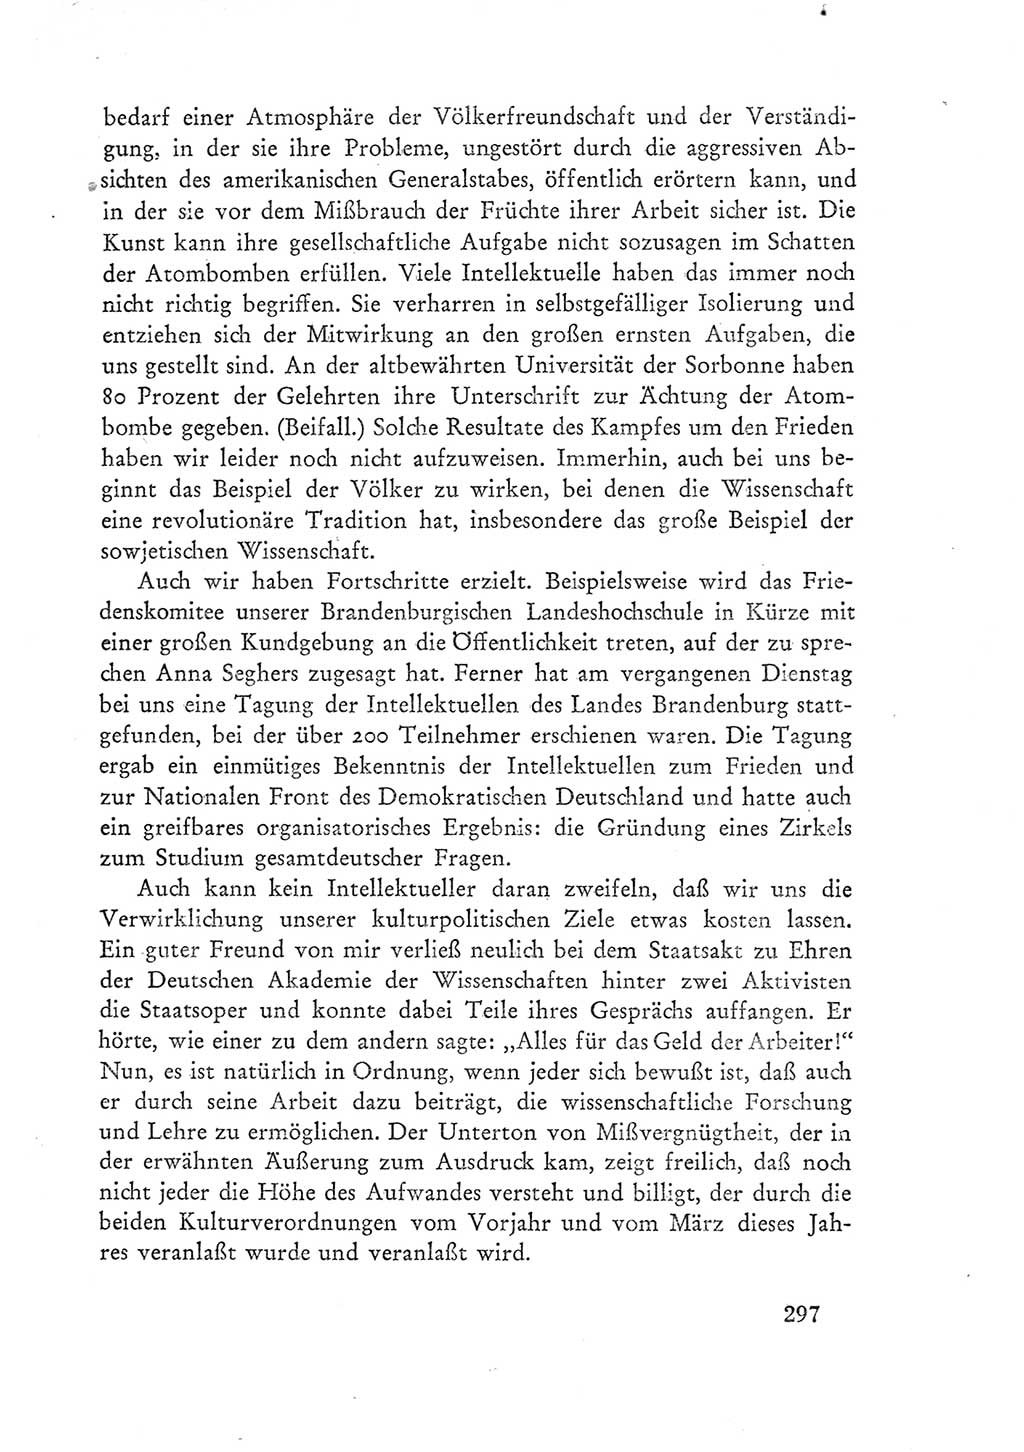 Protokoll der Verhandlungen des Ⅲ. Parteitages der Sozialistischen Einheitspartei Deutschlands (SED) [Deutsche Demokratische Republik (DDR)] 1950, Band 1, Seite 297 (Prot. Verh. Ⅲ. PT SED DDR 1950, Bd. 1, S. 297)